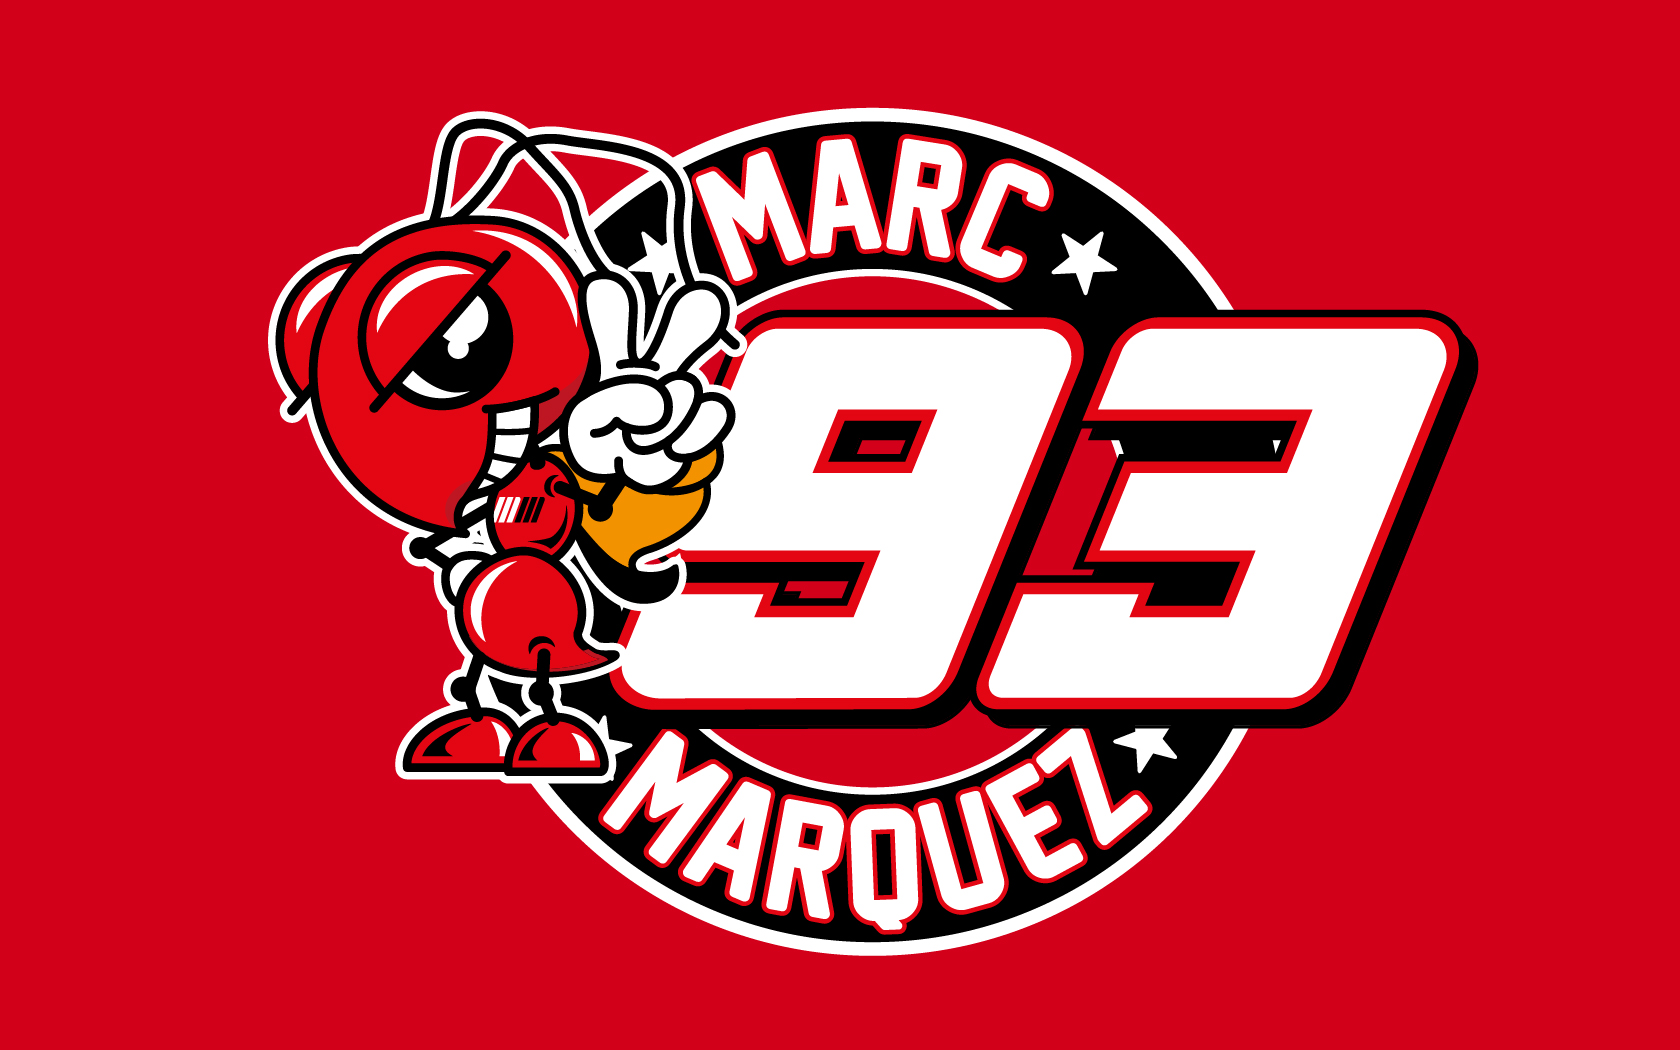 marcmarquez-93-logo-red-wallpaper - Marc Márquez 93 Fansite ...